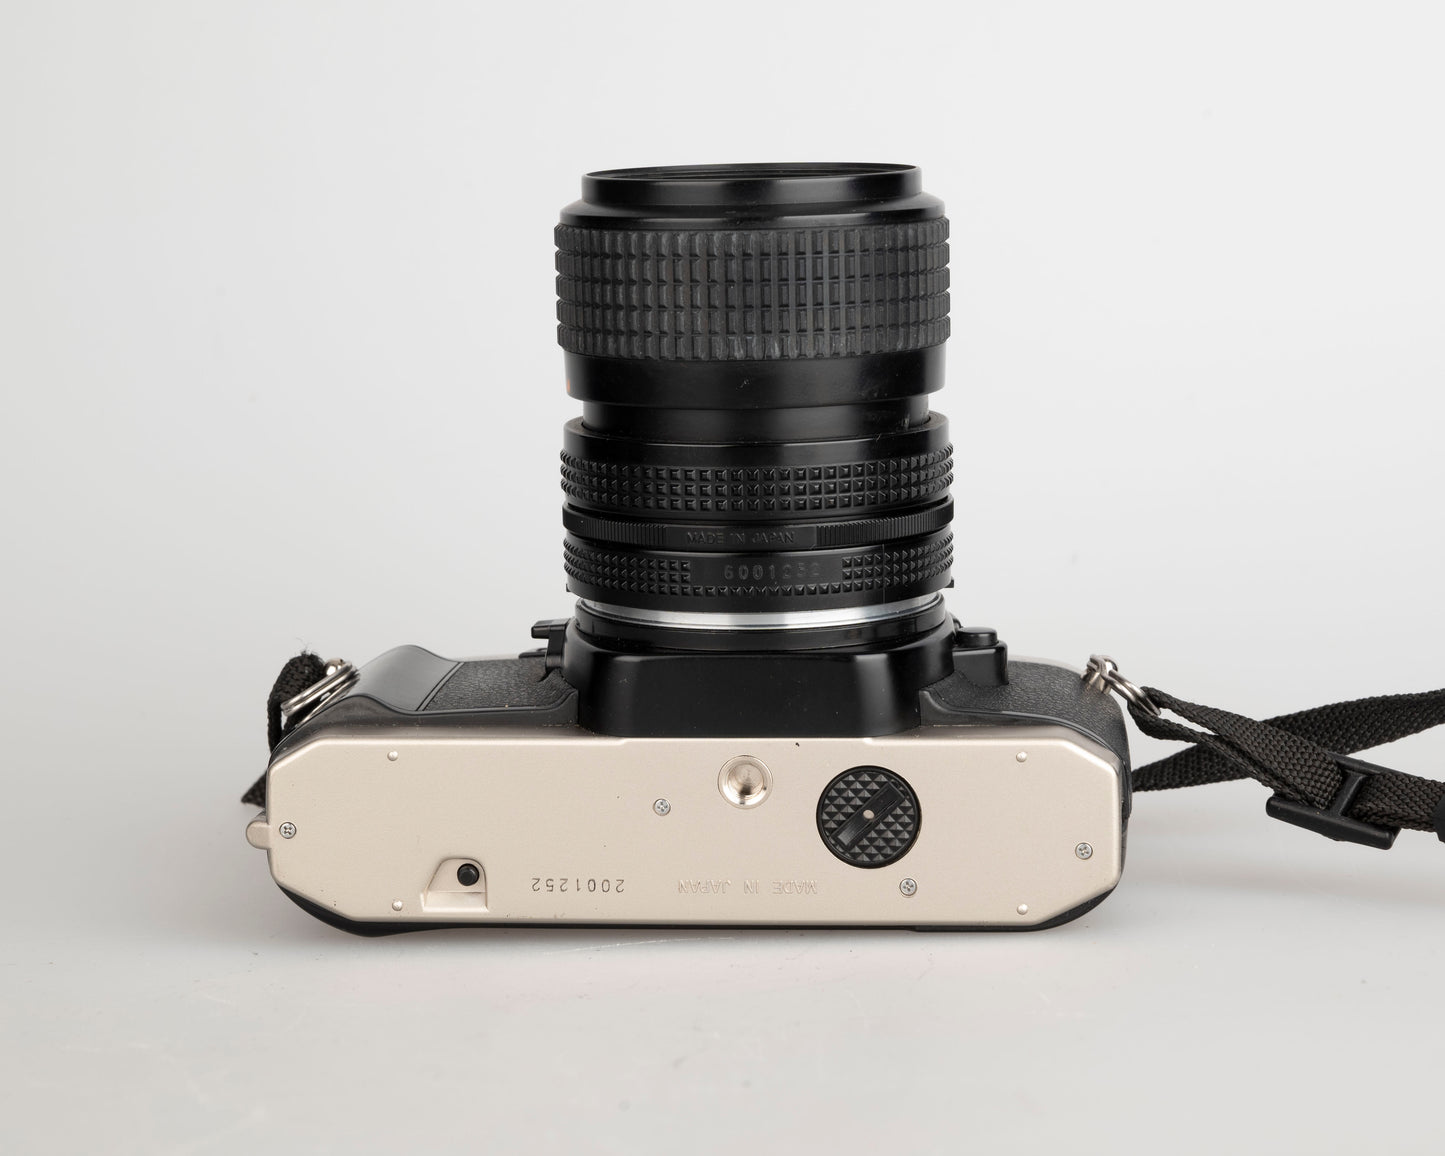 Appareil photo reflex Nikon FE10 35 mm avec objectif Zoom-Nikkor 35-70 mm + étui toujours prêt (série 2001252)